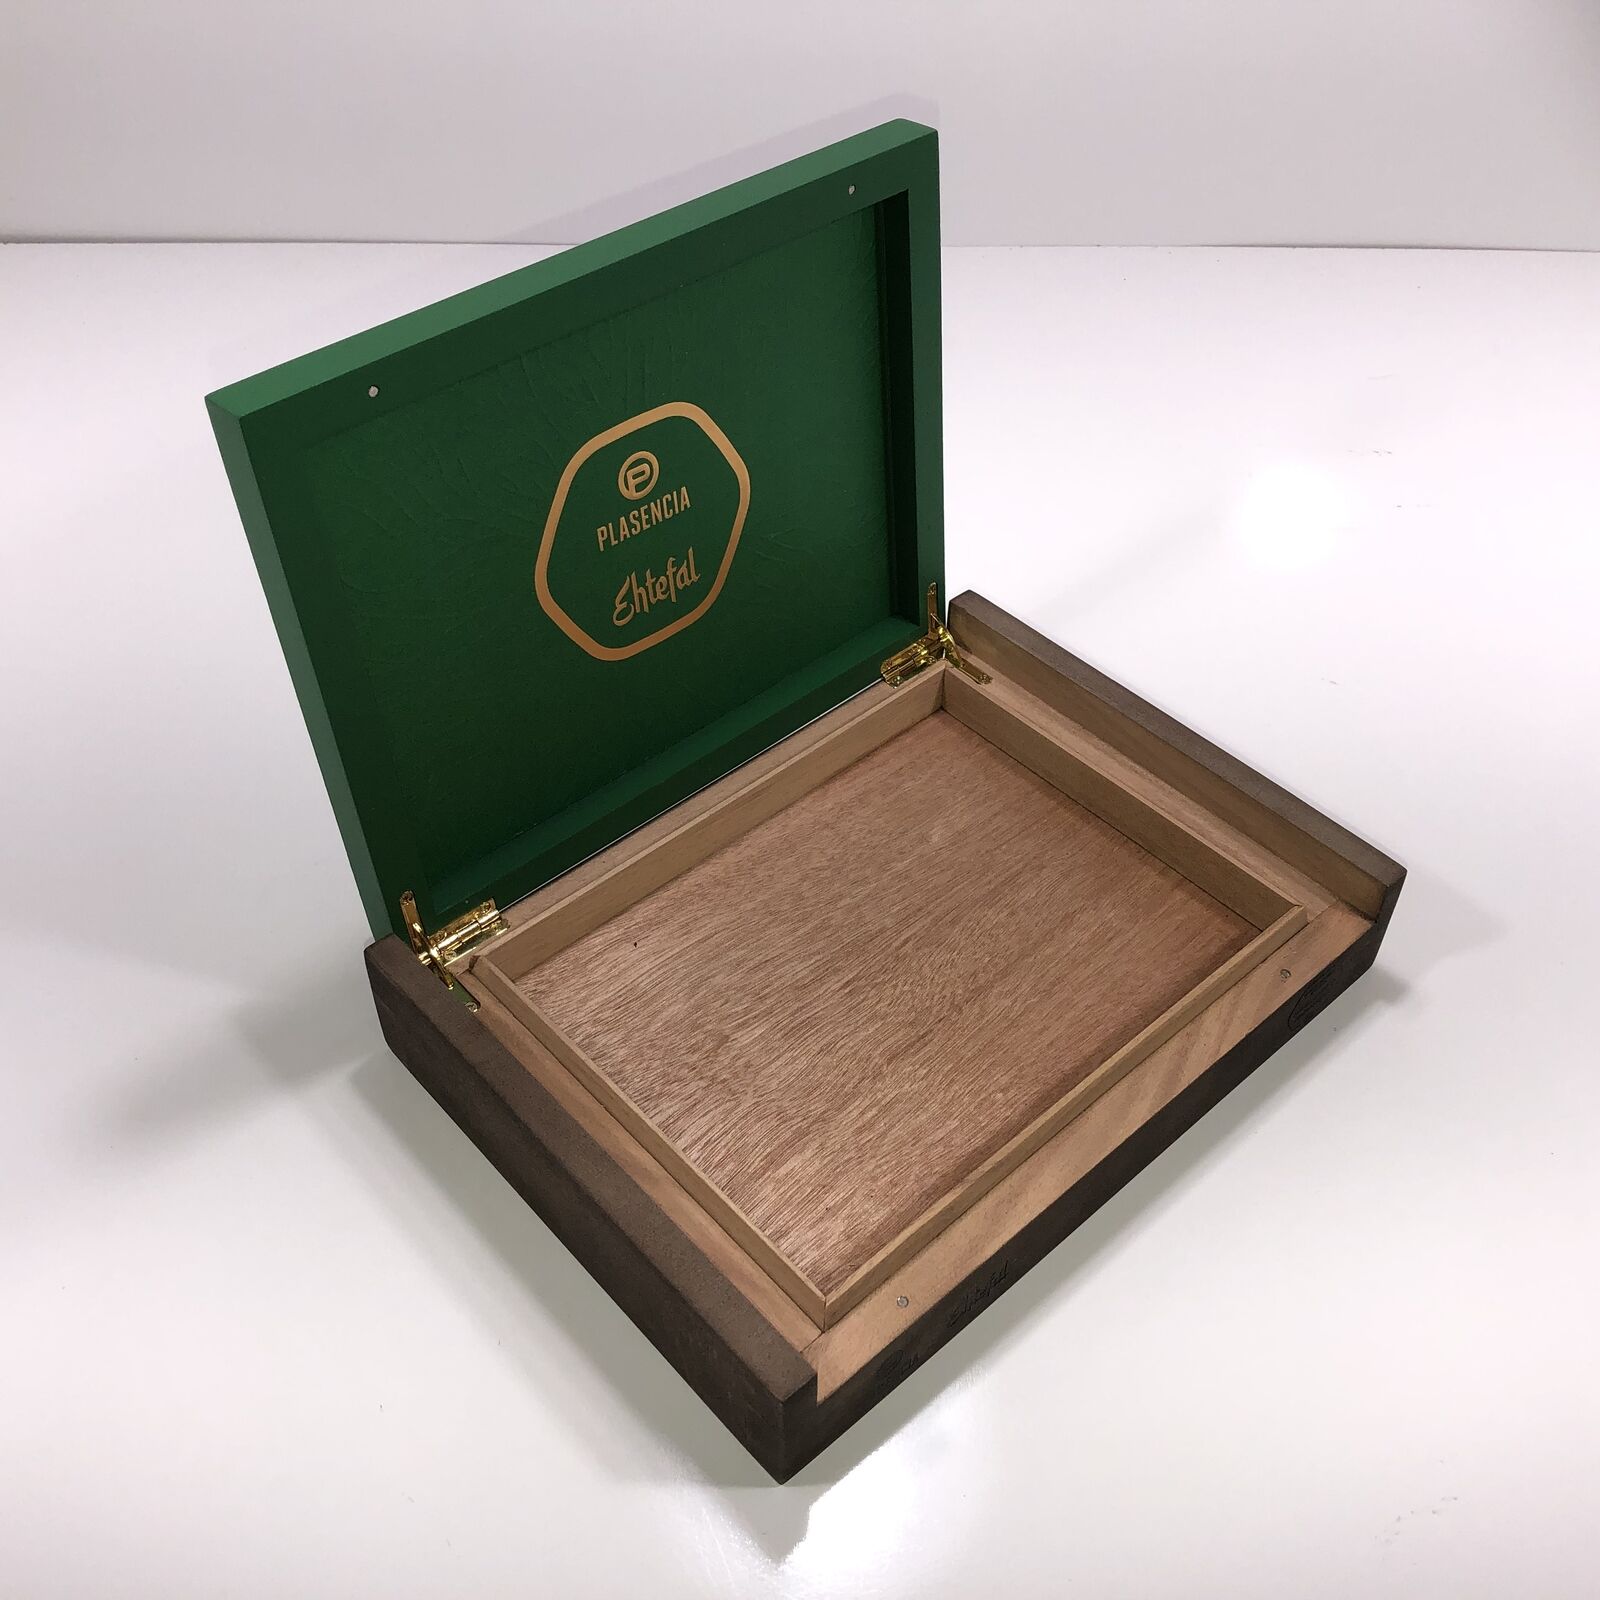 Plasencia Ehtefal Empty Wooden Cigar Box 10.5x7.75x2